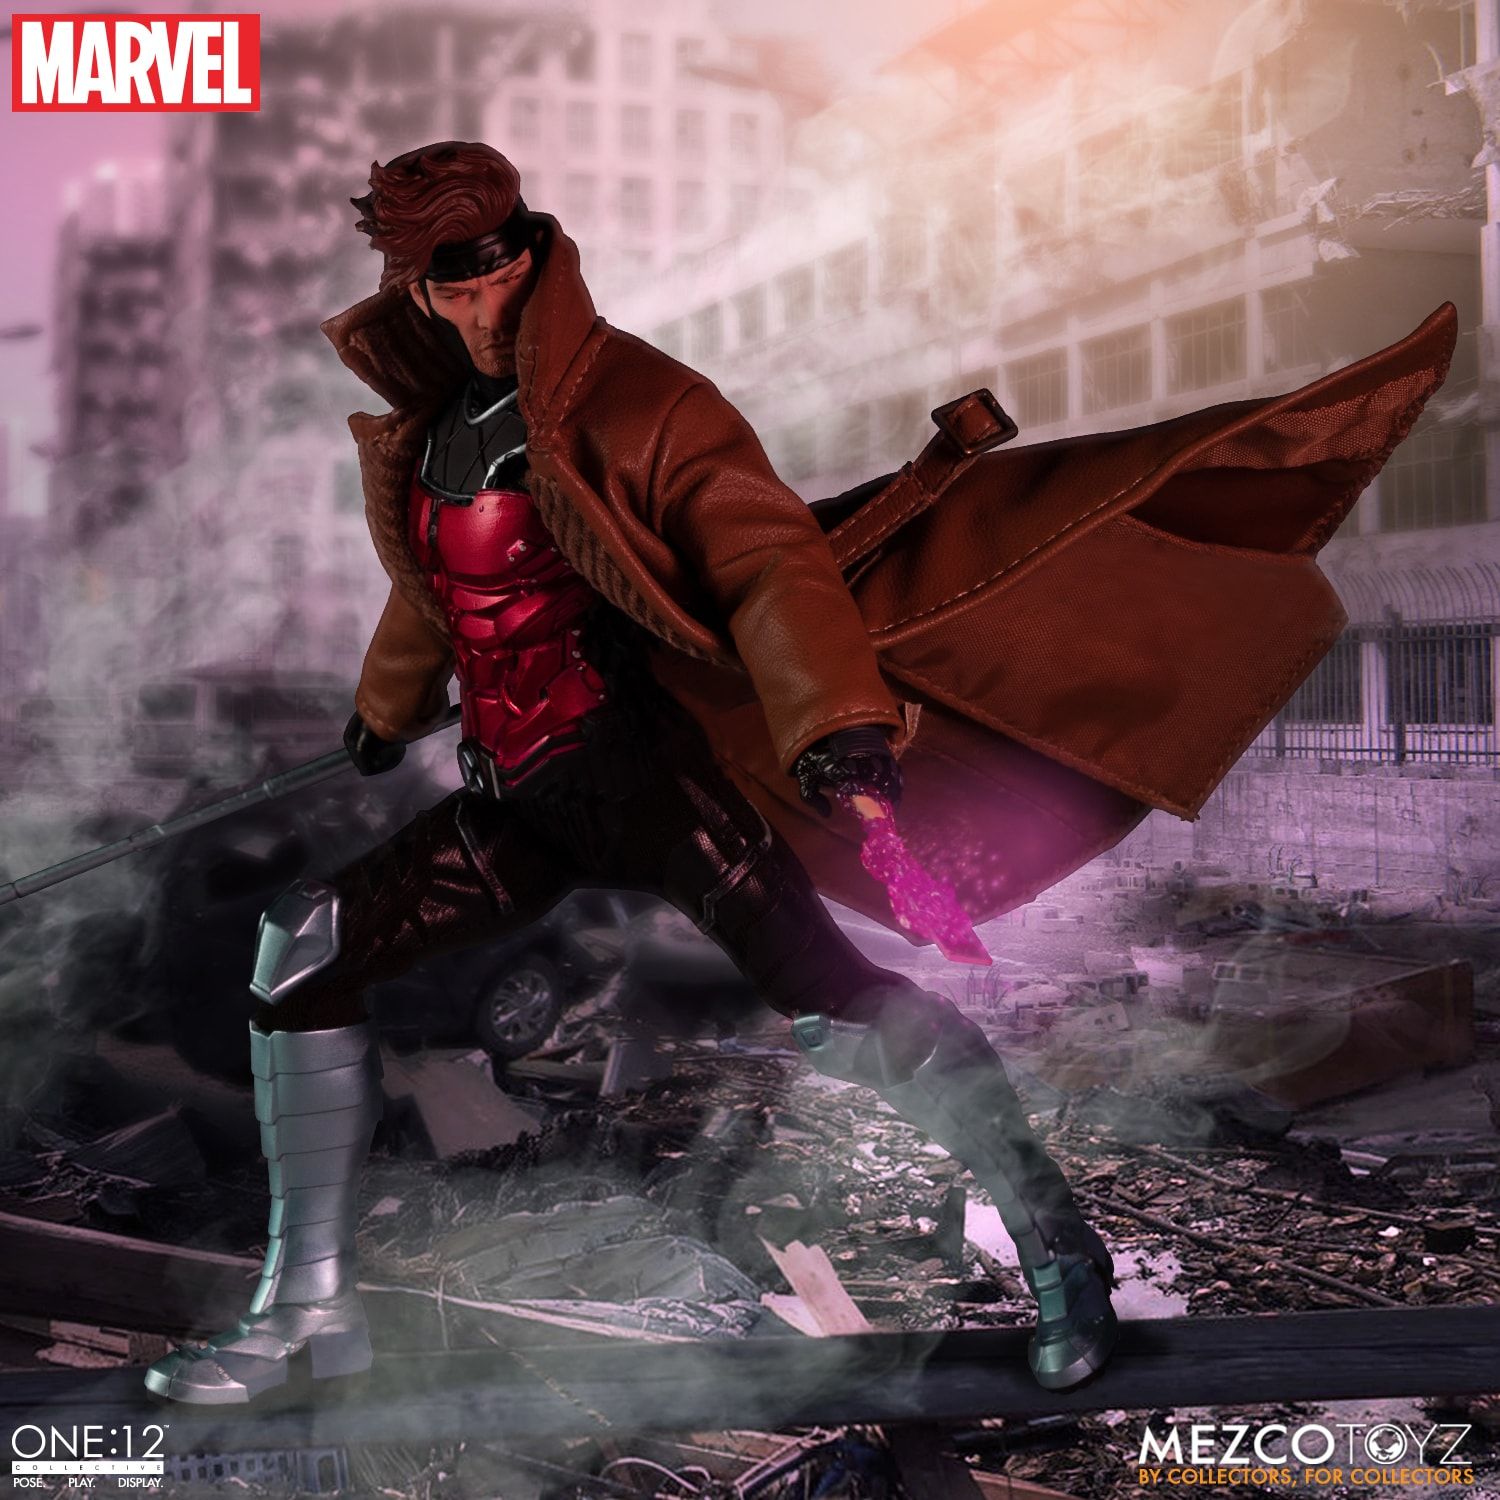 Mezco - One:12 Collcective - Marvel&#39;s X-Men - Gambit - Marvelous Toys